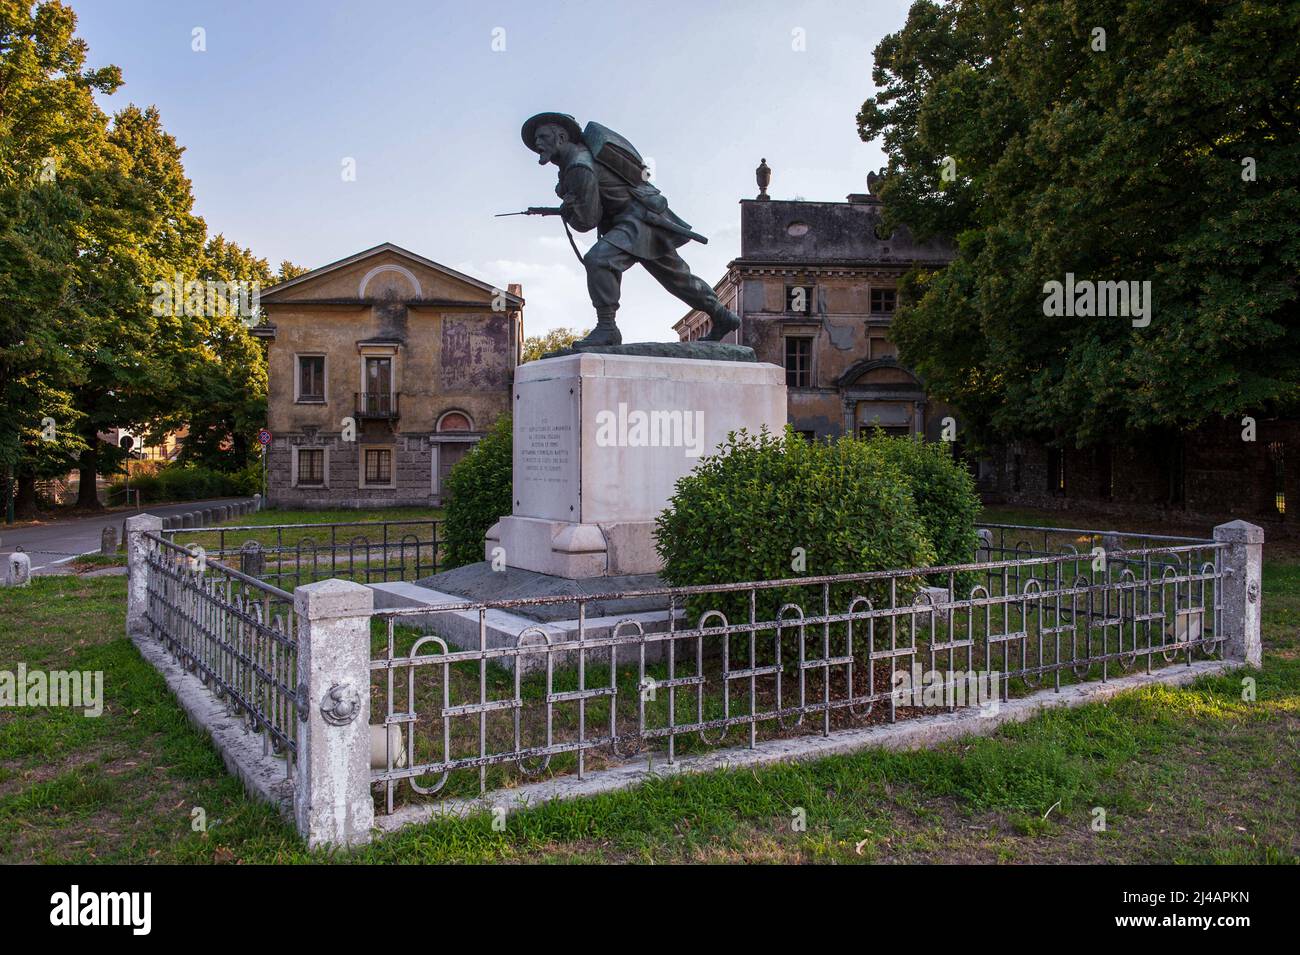 Goito, Italiy 22/08/2015: monumento in memoria della vittoria, contro gli austriaci, dei bersaglieri comandati dal generale La Marmora nell'aprile del 1848. ©Andrea Sabbadini Stockfoto